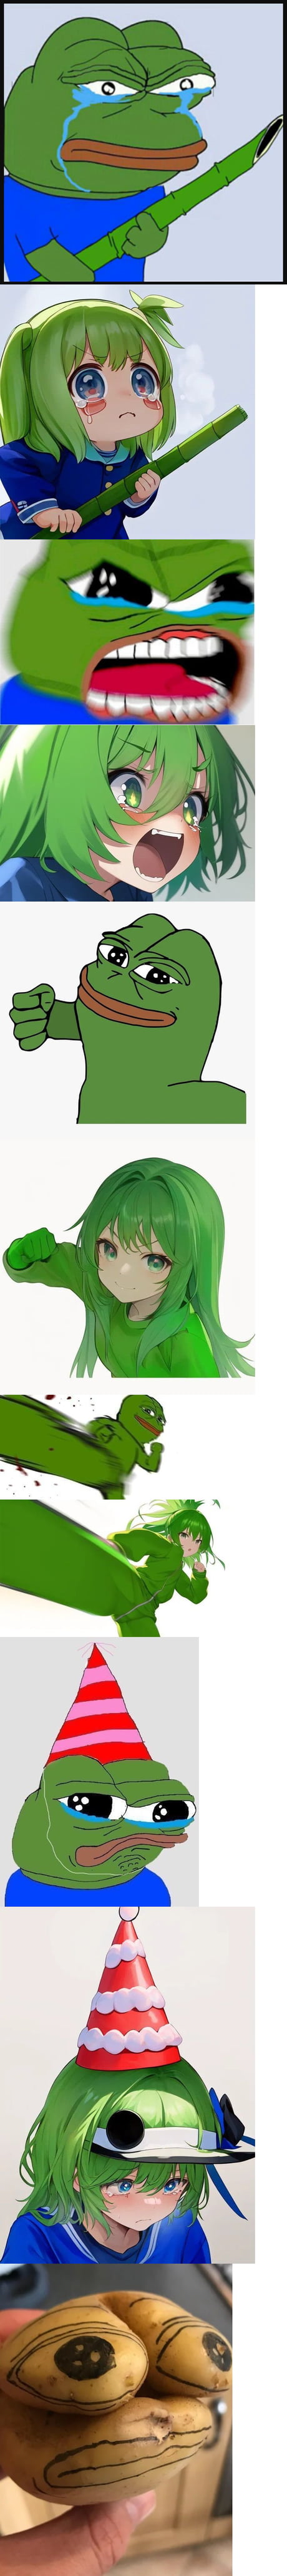 Pepe the Frog - Zerochan Anime Image Board